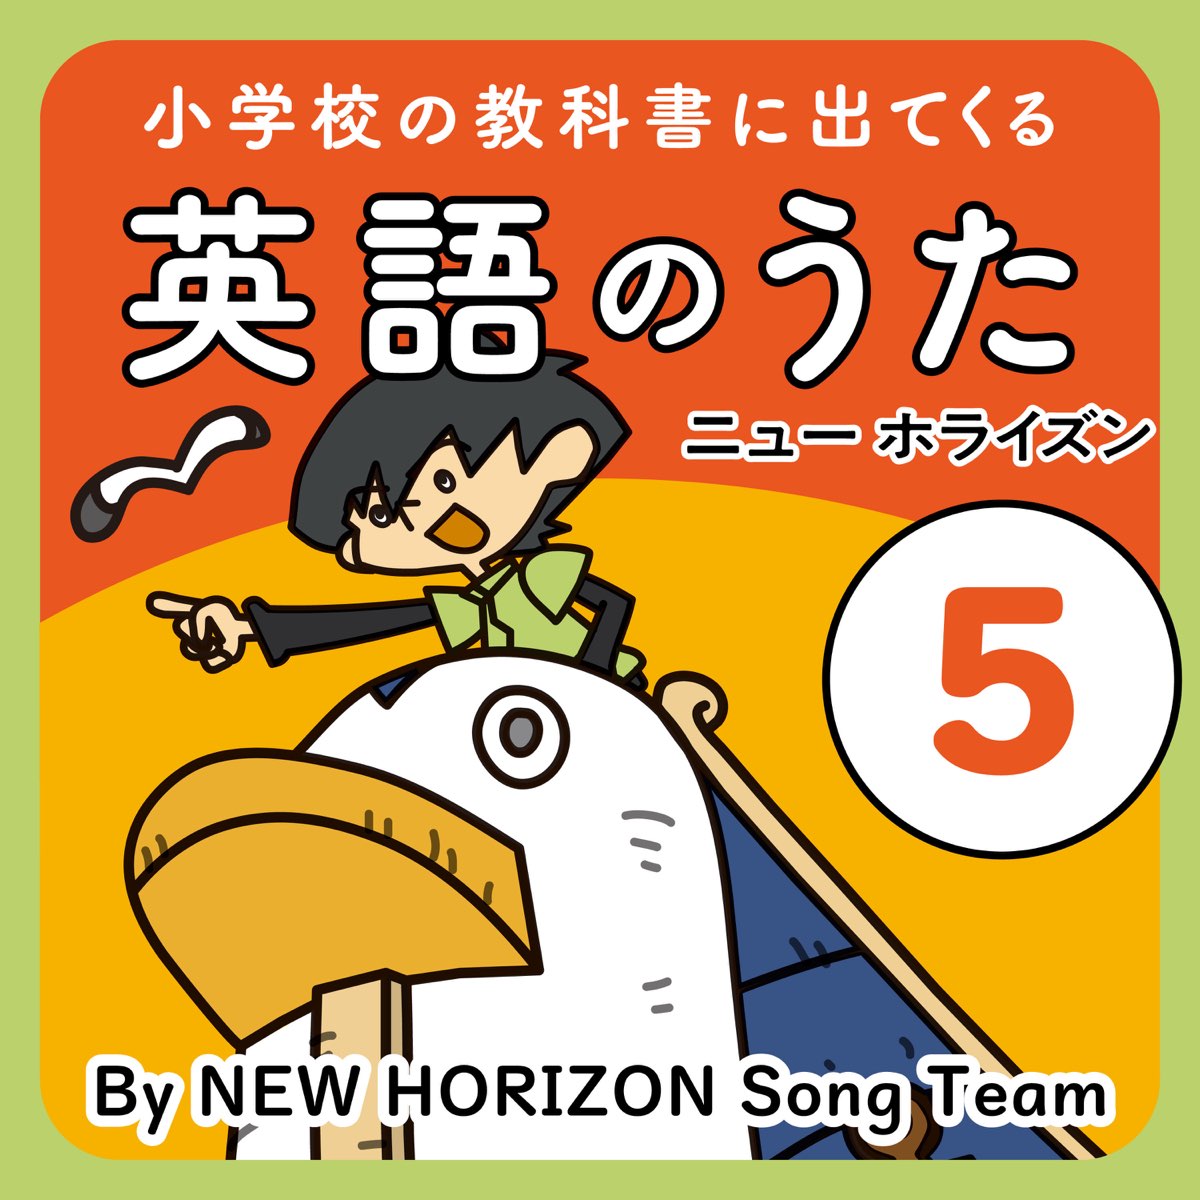 New Horizon Song Teamの 小学校の教科書に出てくる英語のうた 5 ニュー ホライズン をapple Musicで